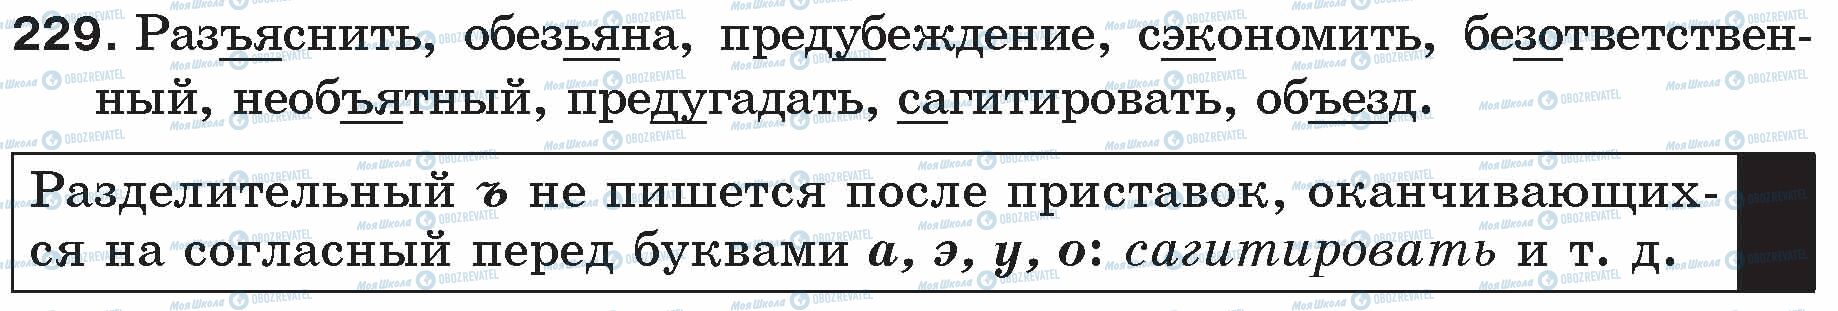 ГДЗ Російська мова 5 клас сторінка 229